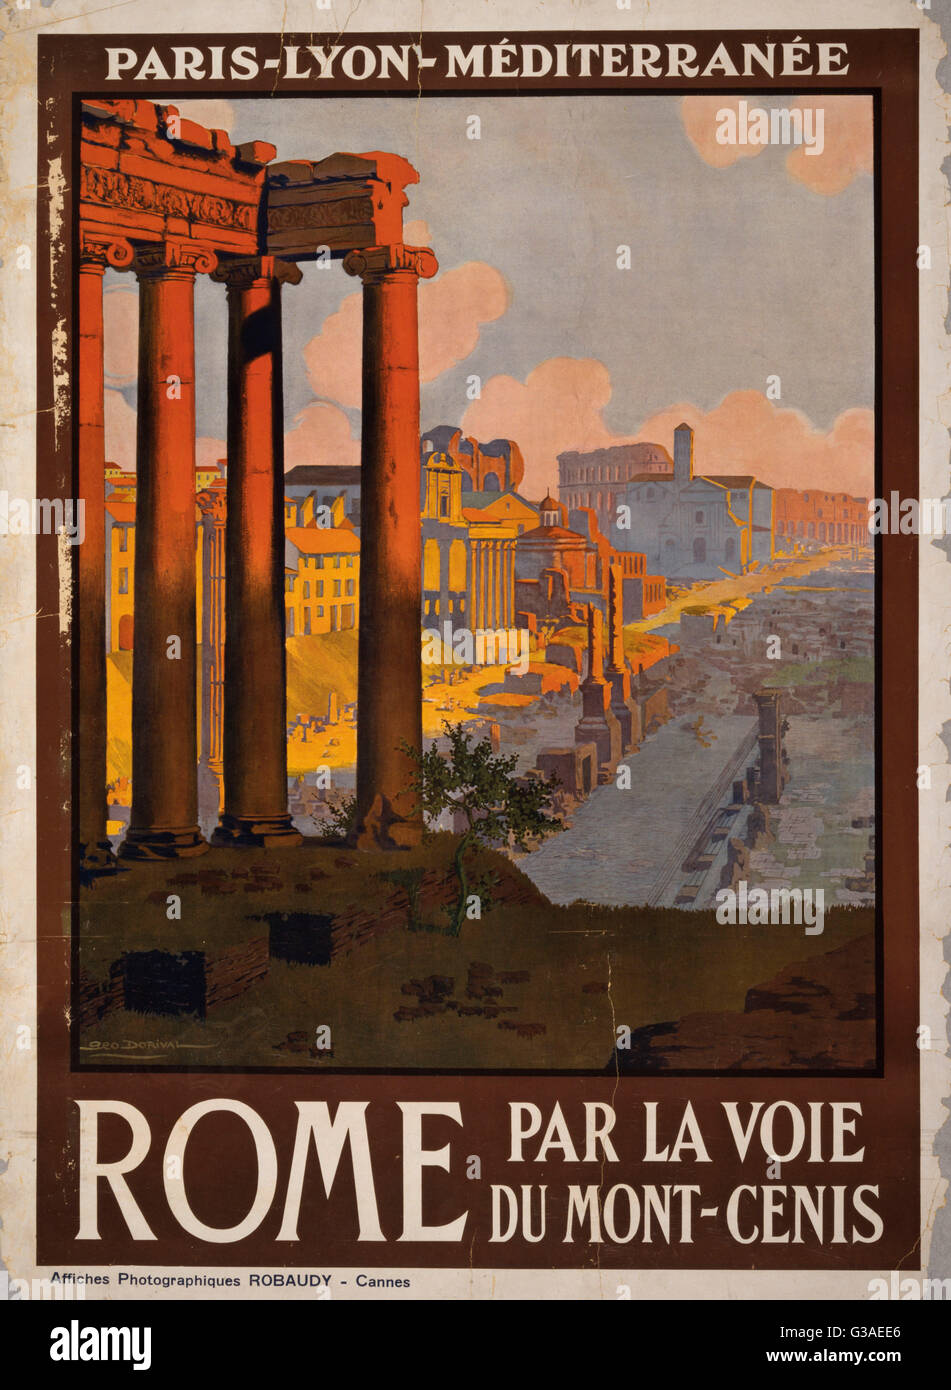 Rome par la voie du Mont-Cenis. Poster showing the Roman Forum at dawn. Date ca. 1920. Stock Photo